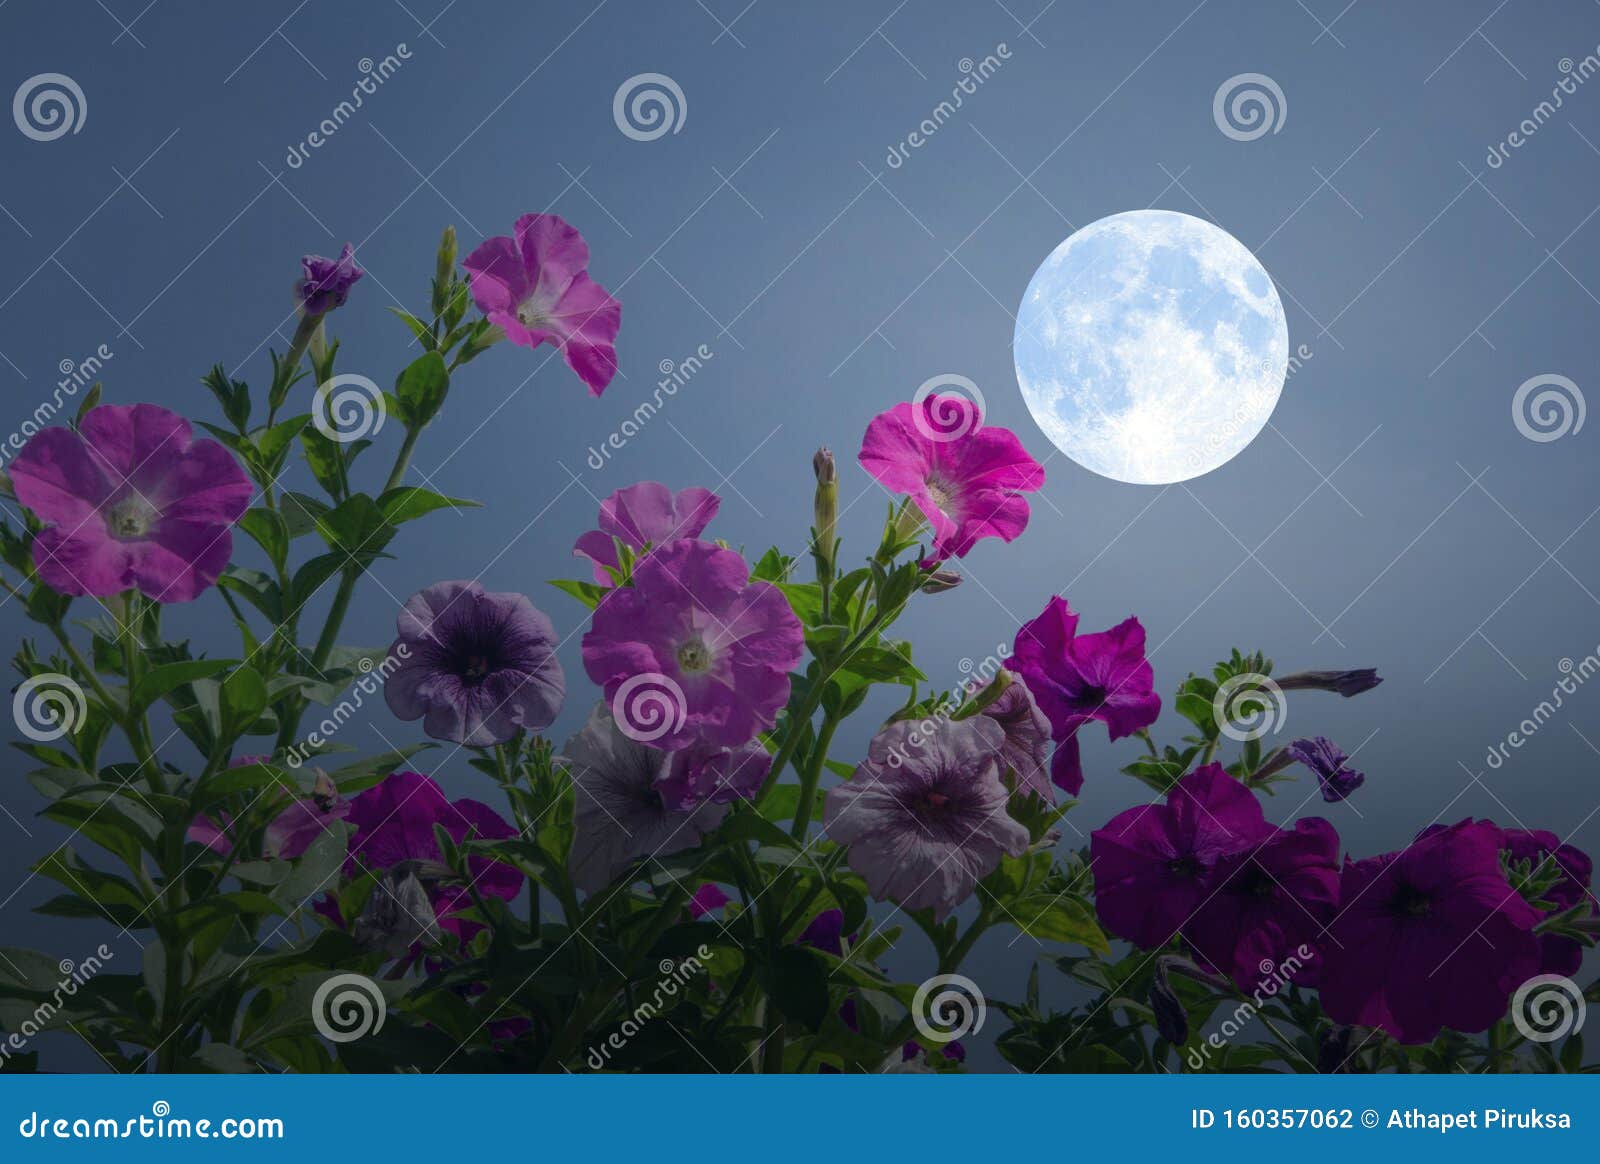 Belle Pleine Lune Avec Des Fleurs De Gloire Du Matin Photo stock - Image du  fleurs, saison: 160357062